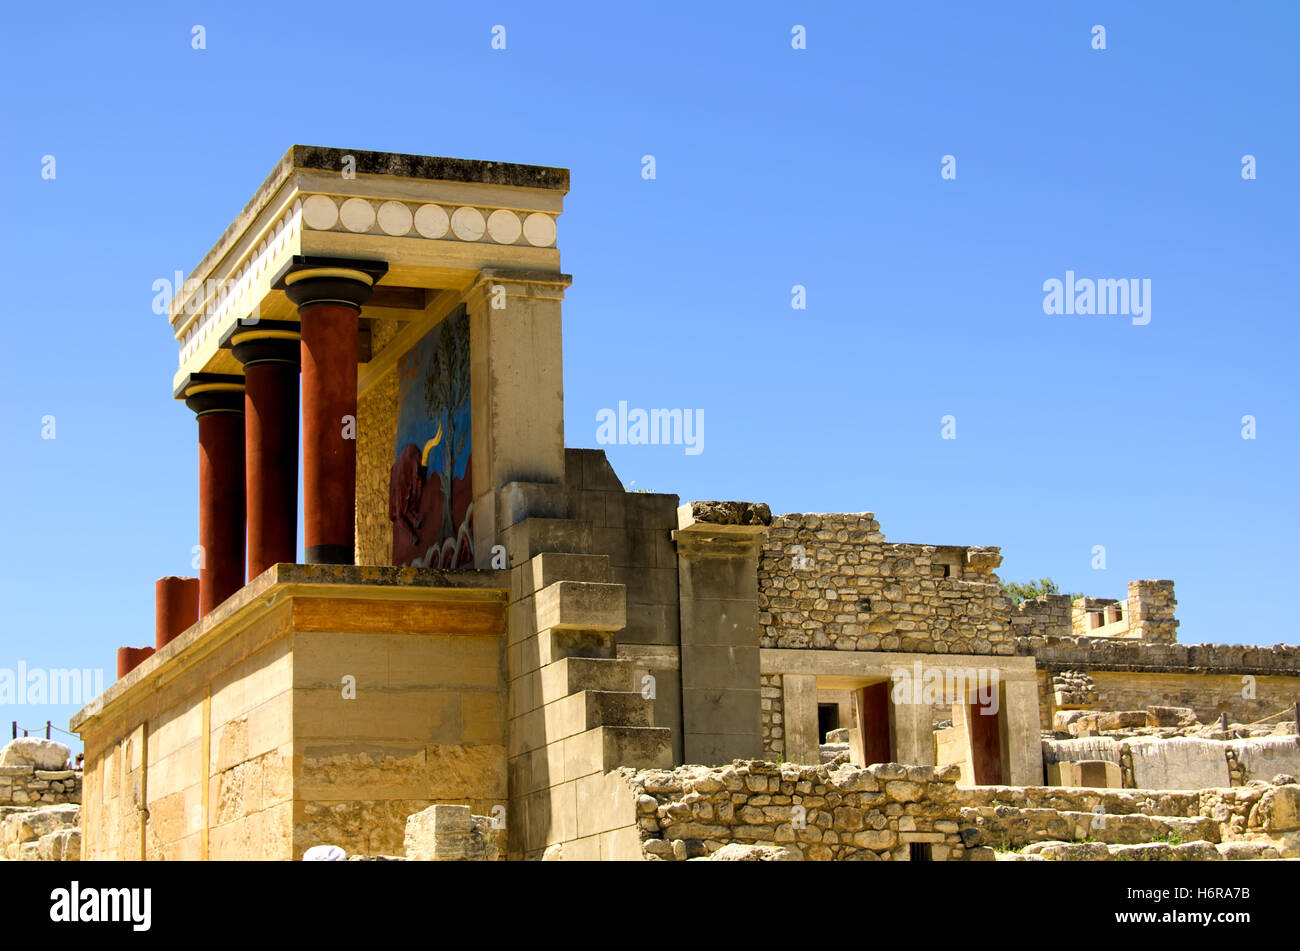 Maison de vacances locations de vacances vacances d'été tourisme Grèce antique ruine summerly pays chaleur chaleur voyage crete Banque D'Images